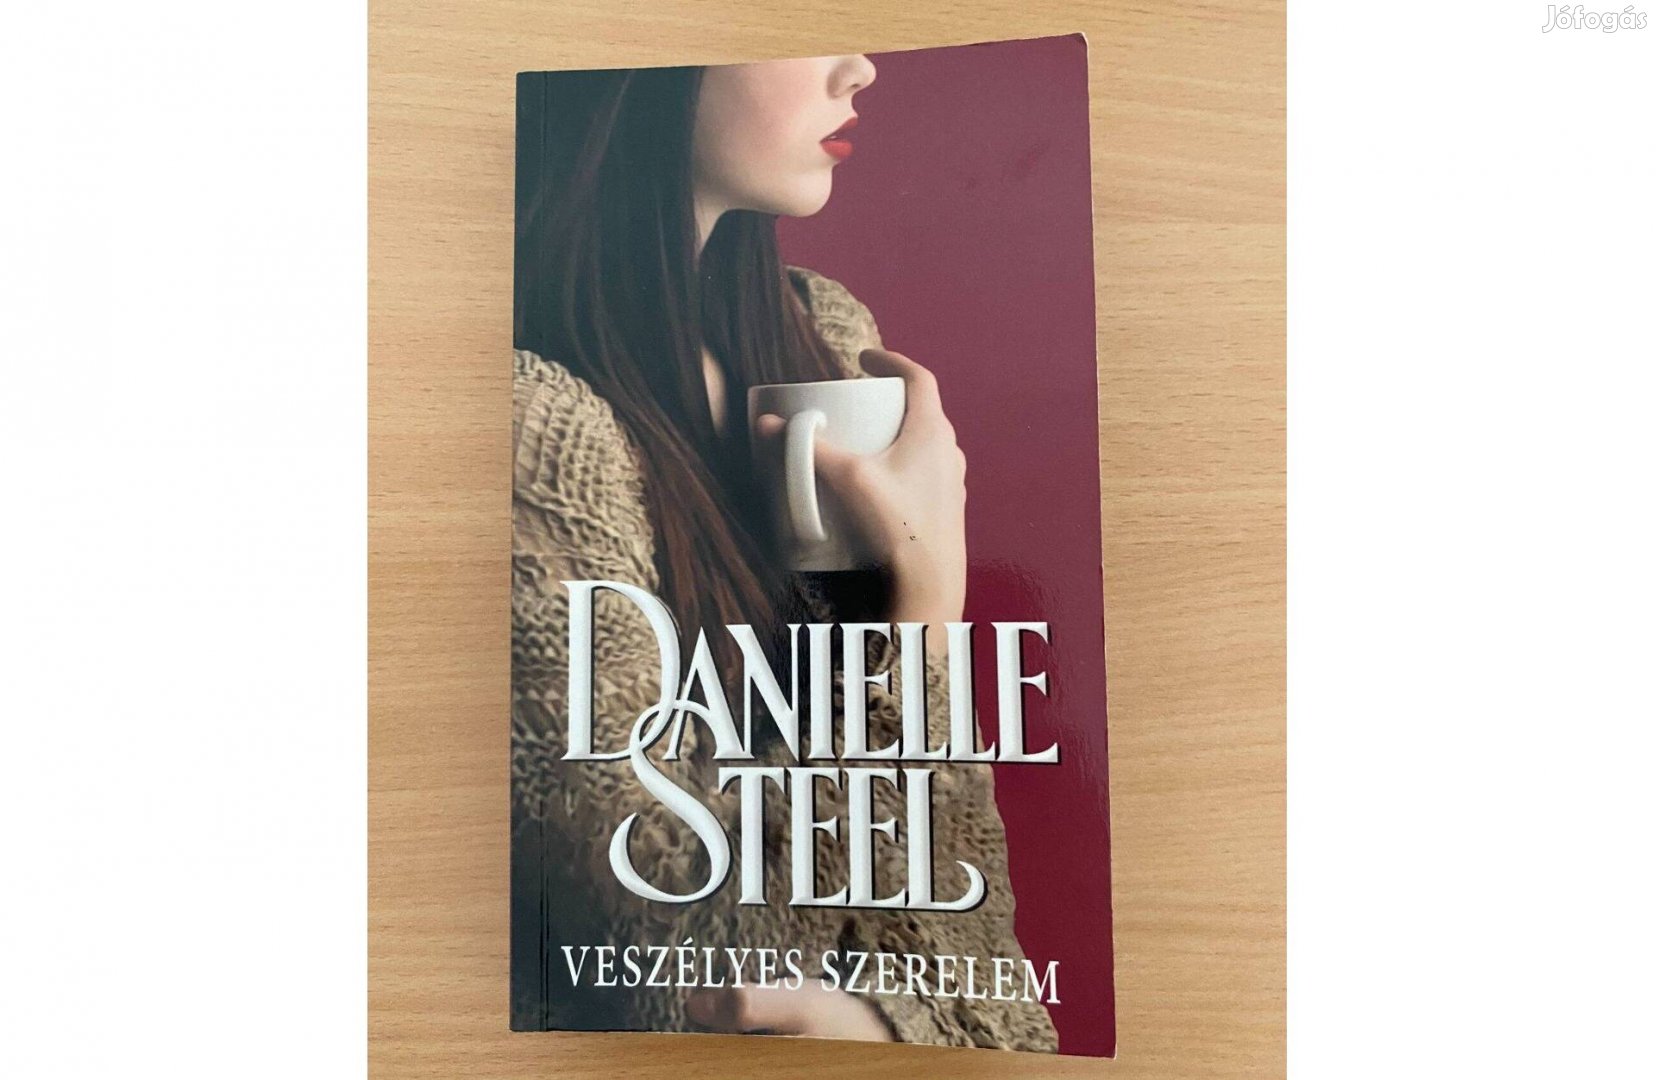 Danielle Steel: Veszélyes szerelem című könyv